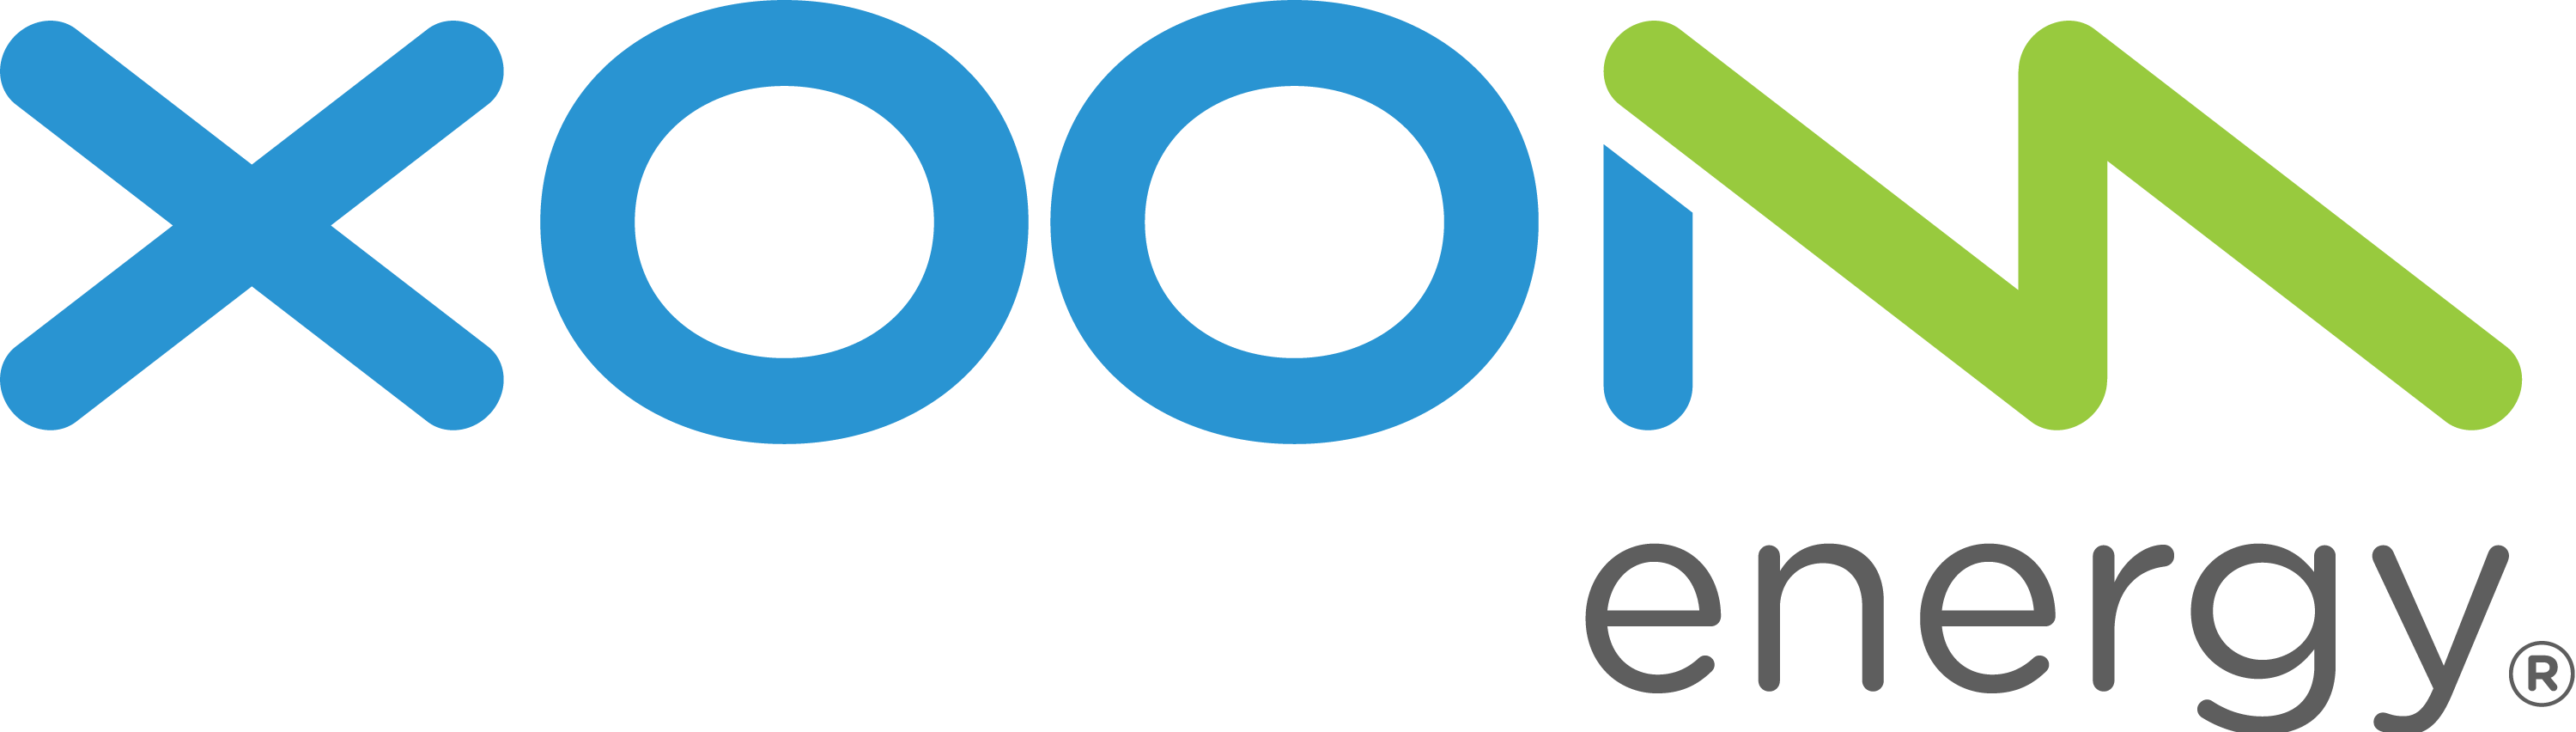 Xoom Logo - XOOM Energy Connecticut, LLC